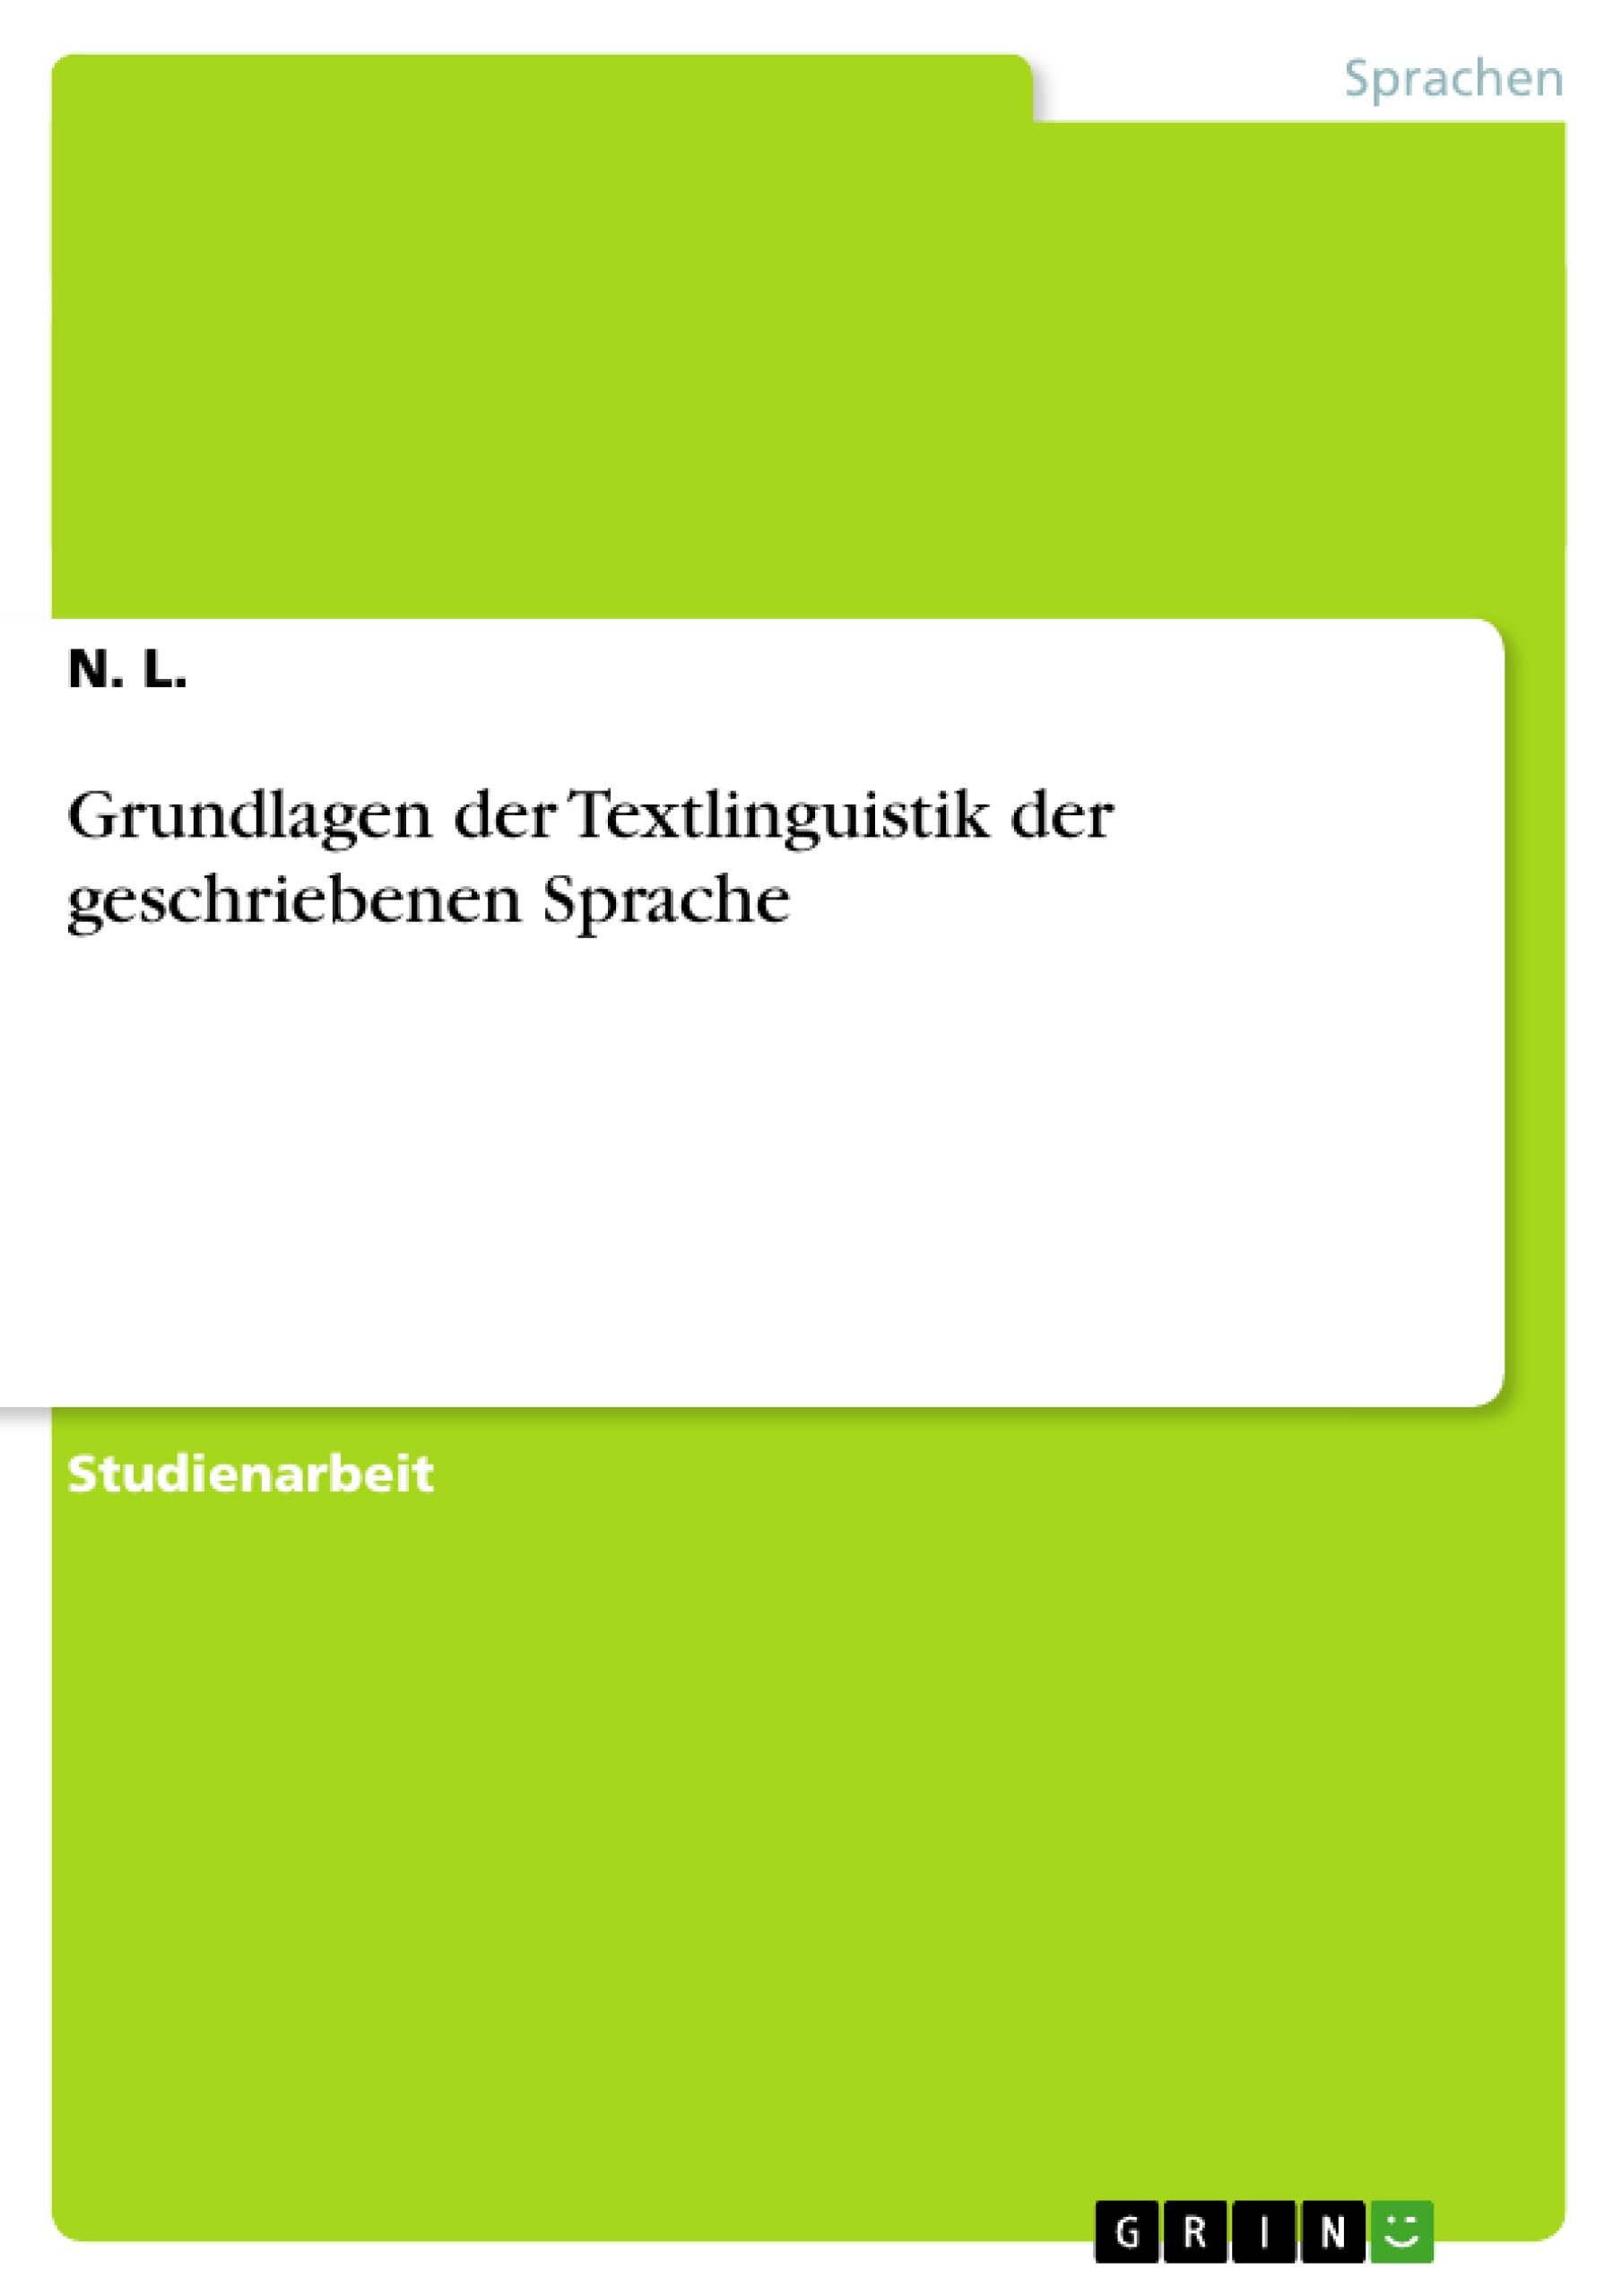 Grundlagen der Textlinguistik der geschriebenen Sprache / N. L. / Taschenbuch / Paperback / Deutsch / 2010 / GRIN Verlag / EAN 9783640761456 - L., N.